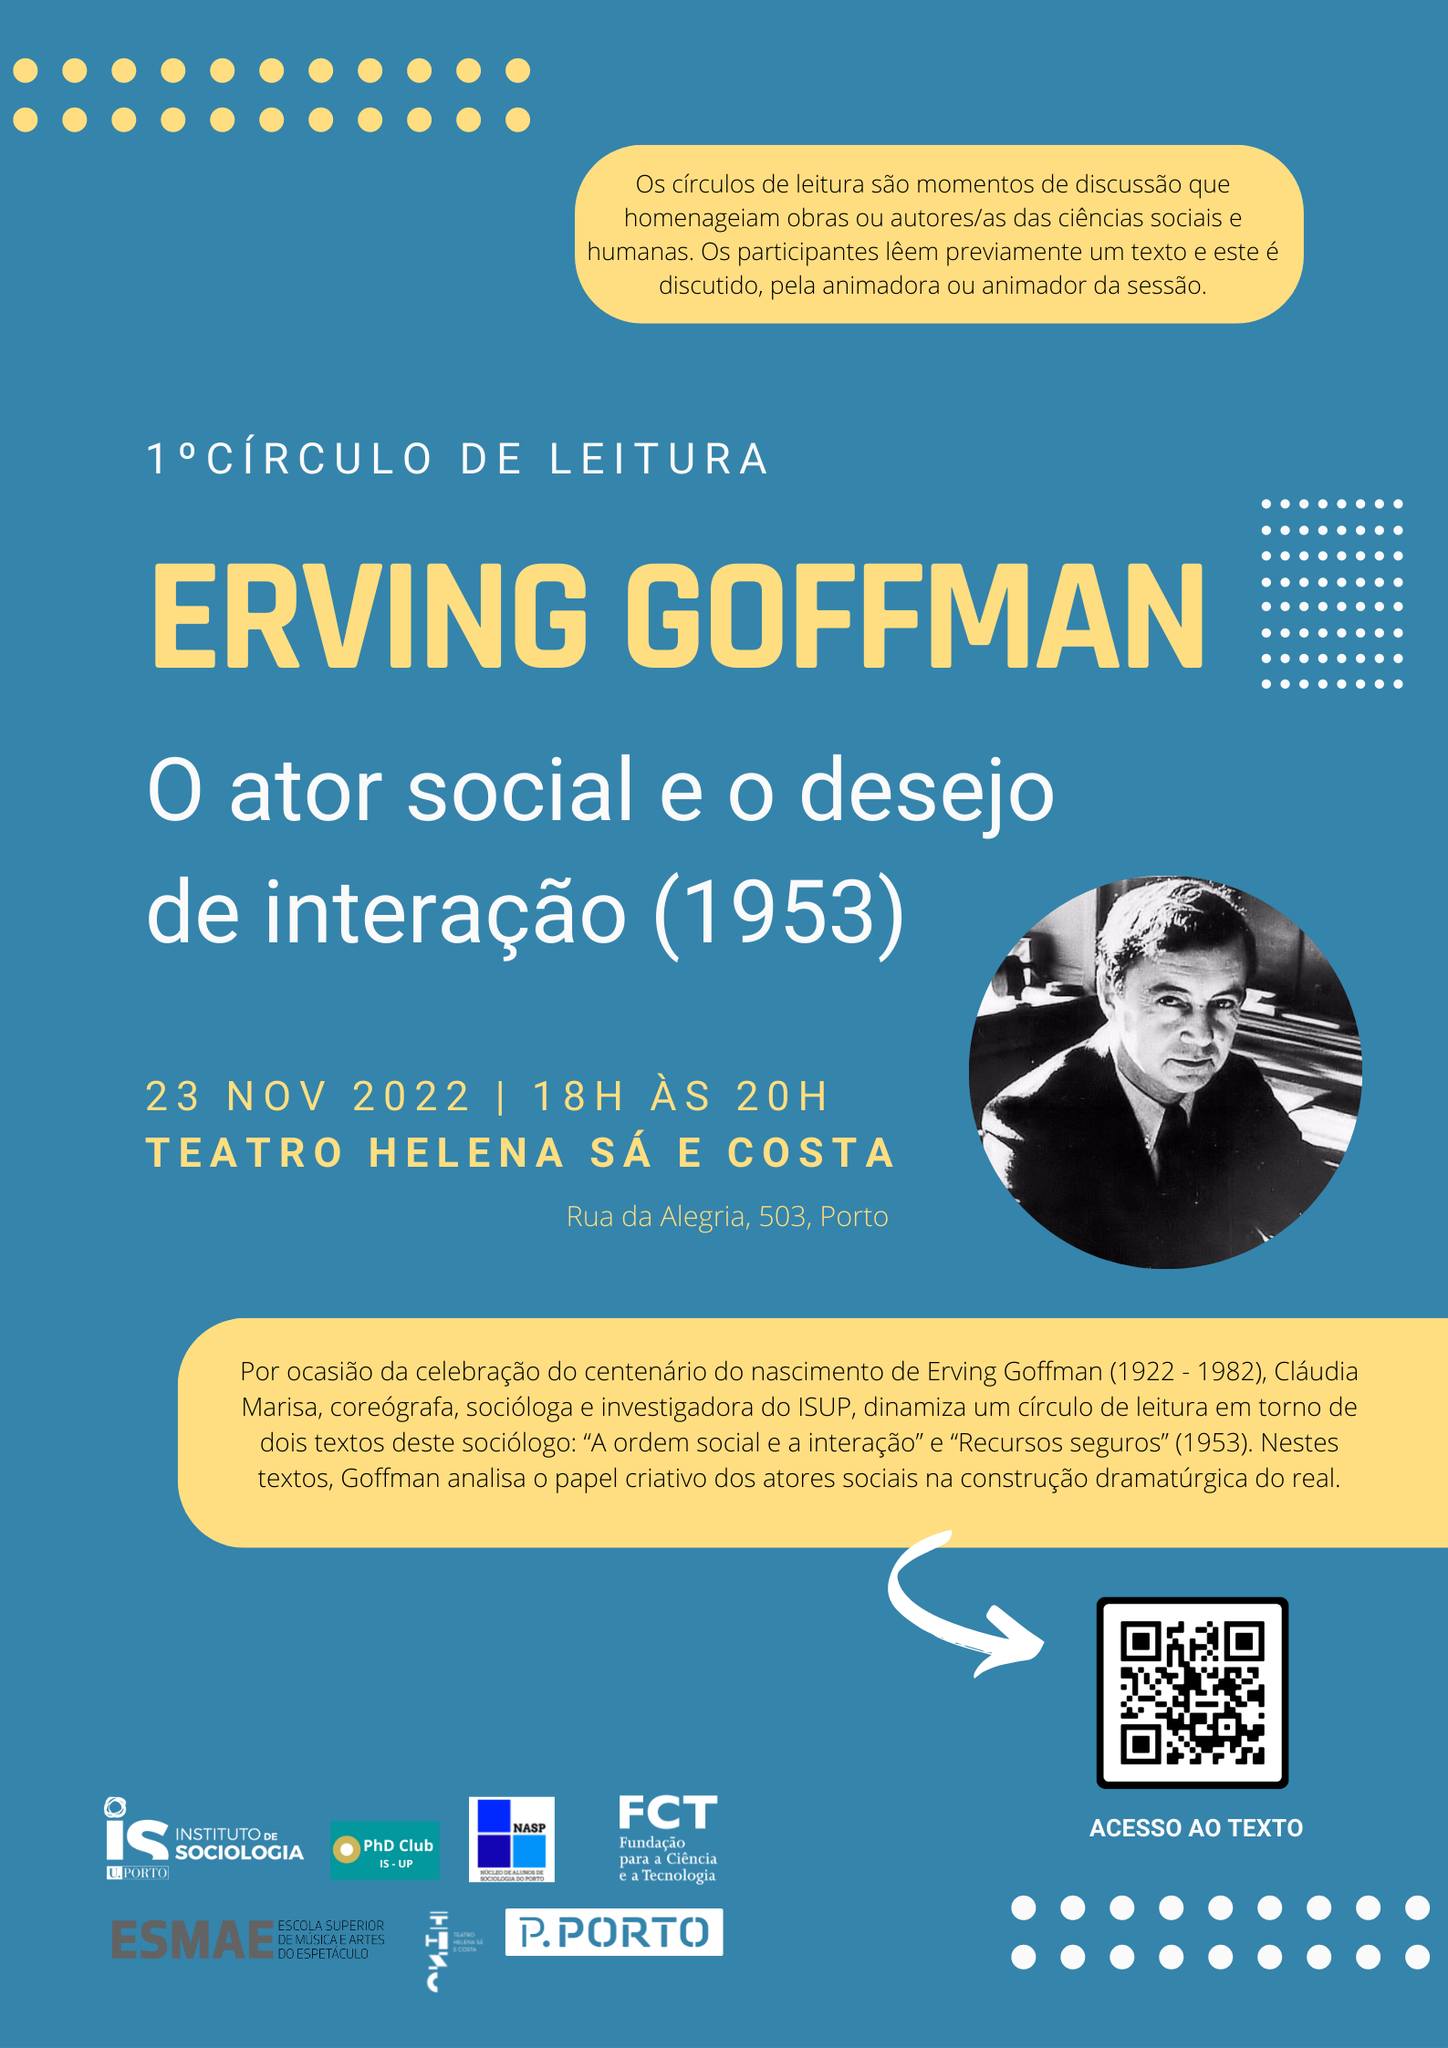 Por ocasião da celebração do centenário do nascimento de Erving Goffman (1922 - 1982